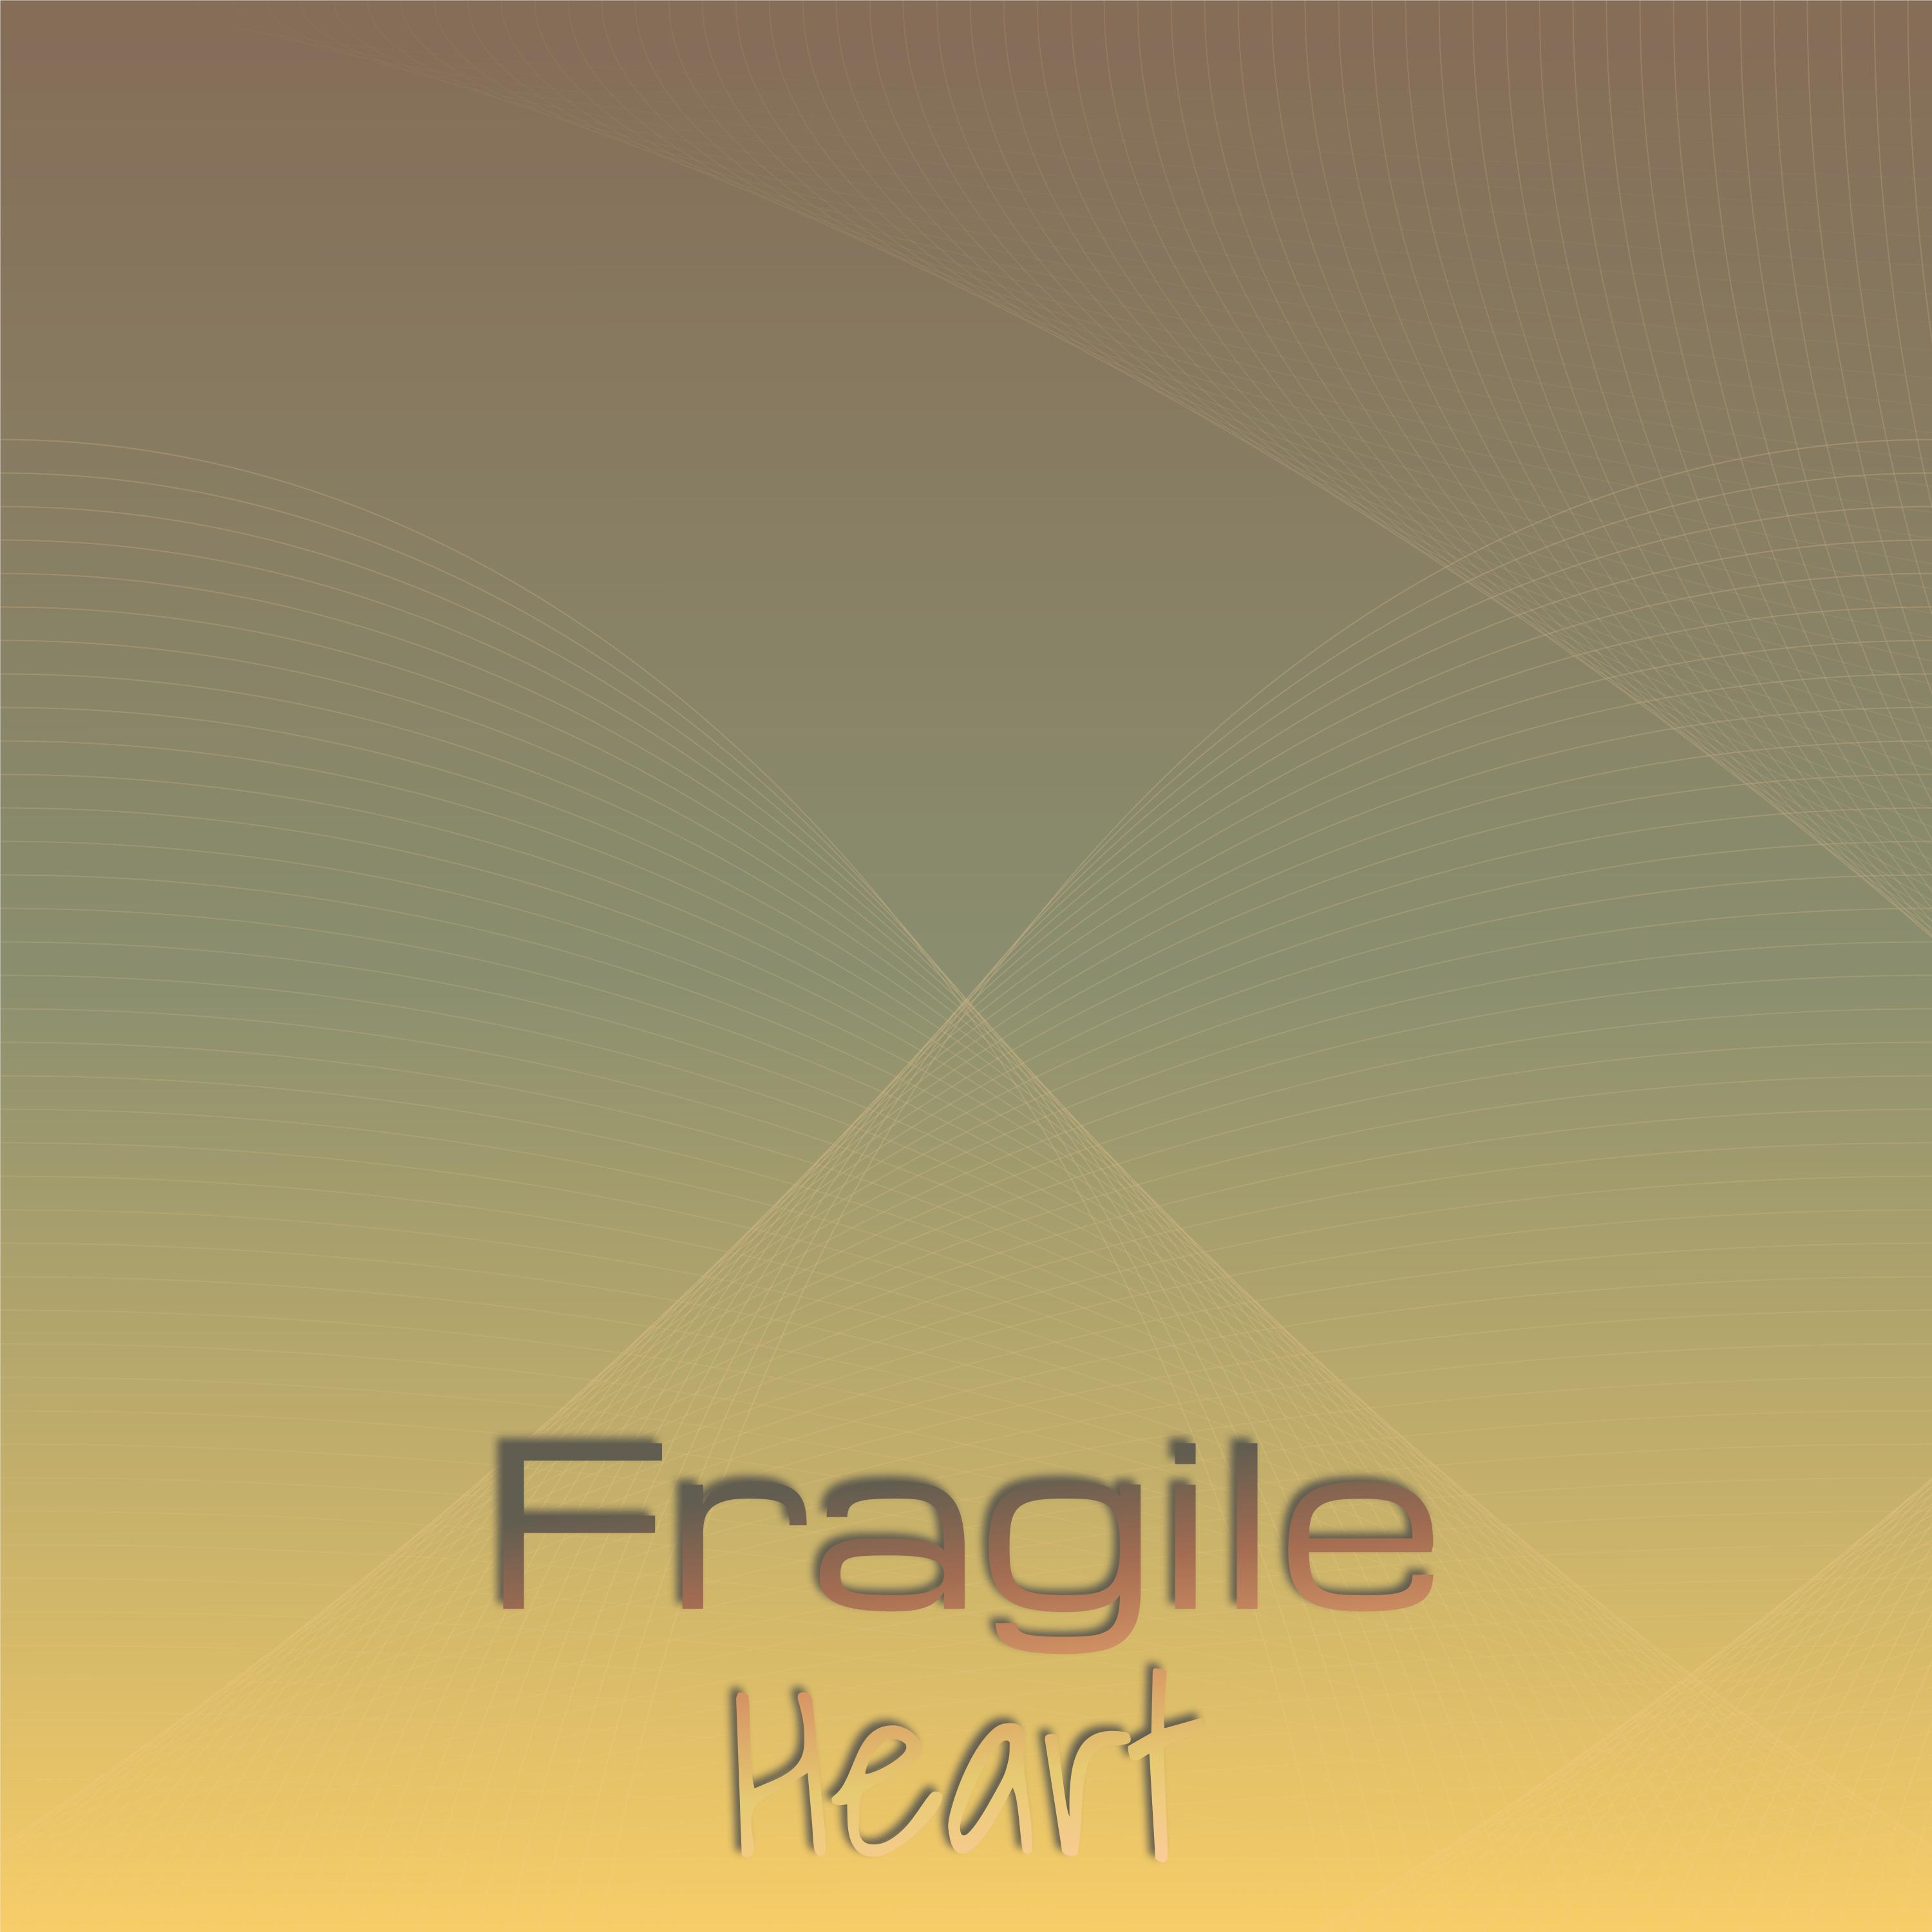 Al Dean - Fragile Heart